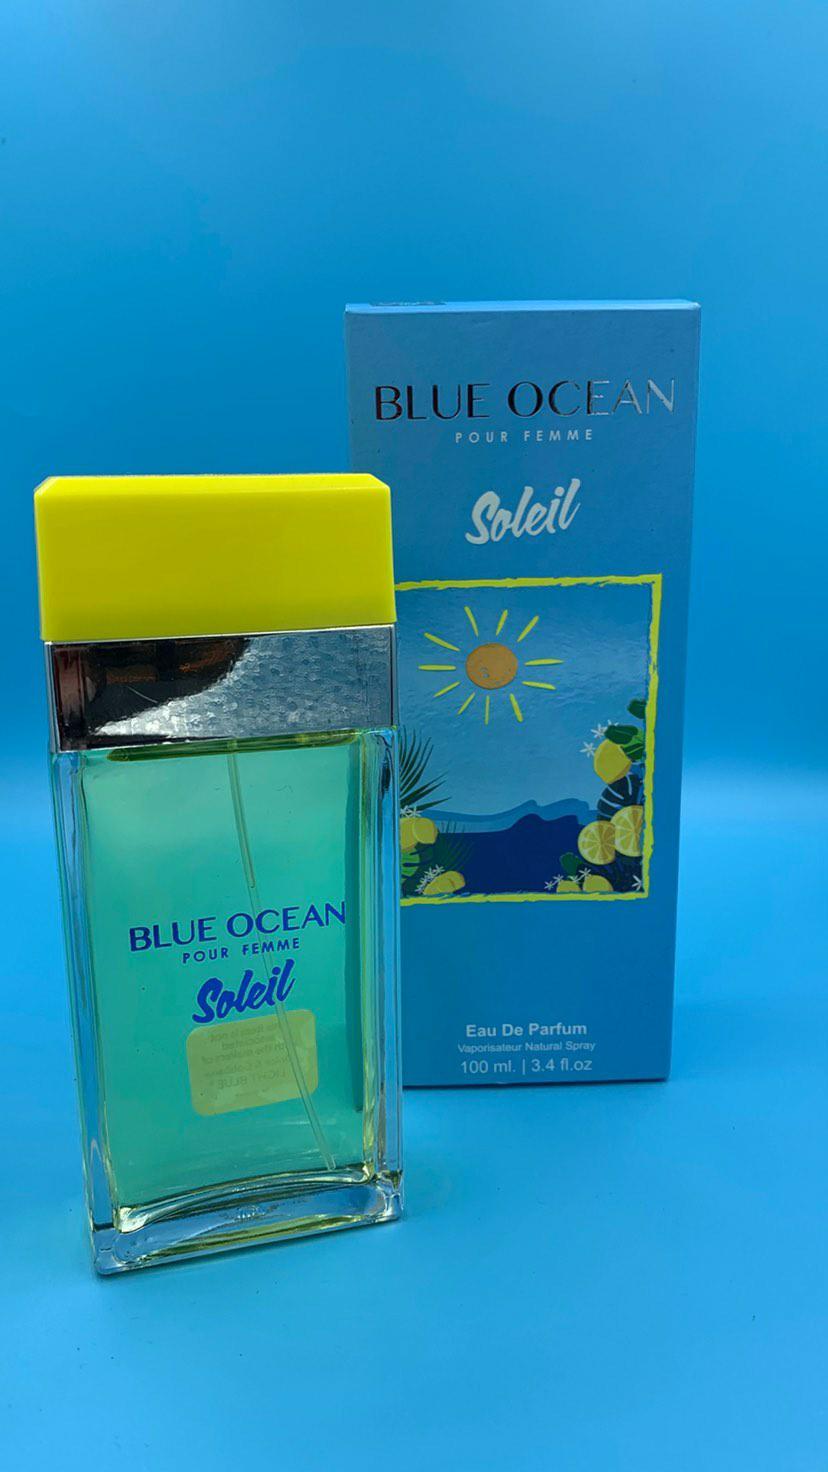 BLUE OCEAN SOLEIL (EAU DE PARFUM)